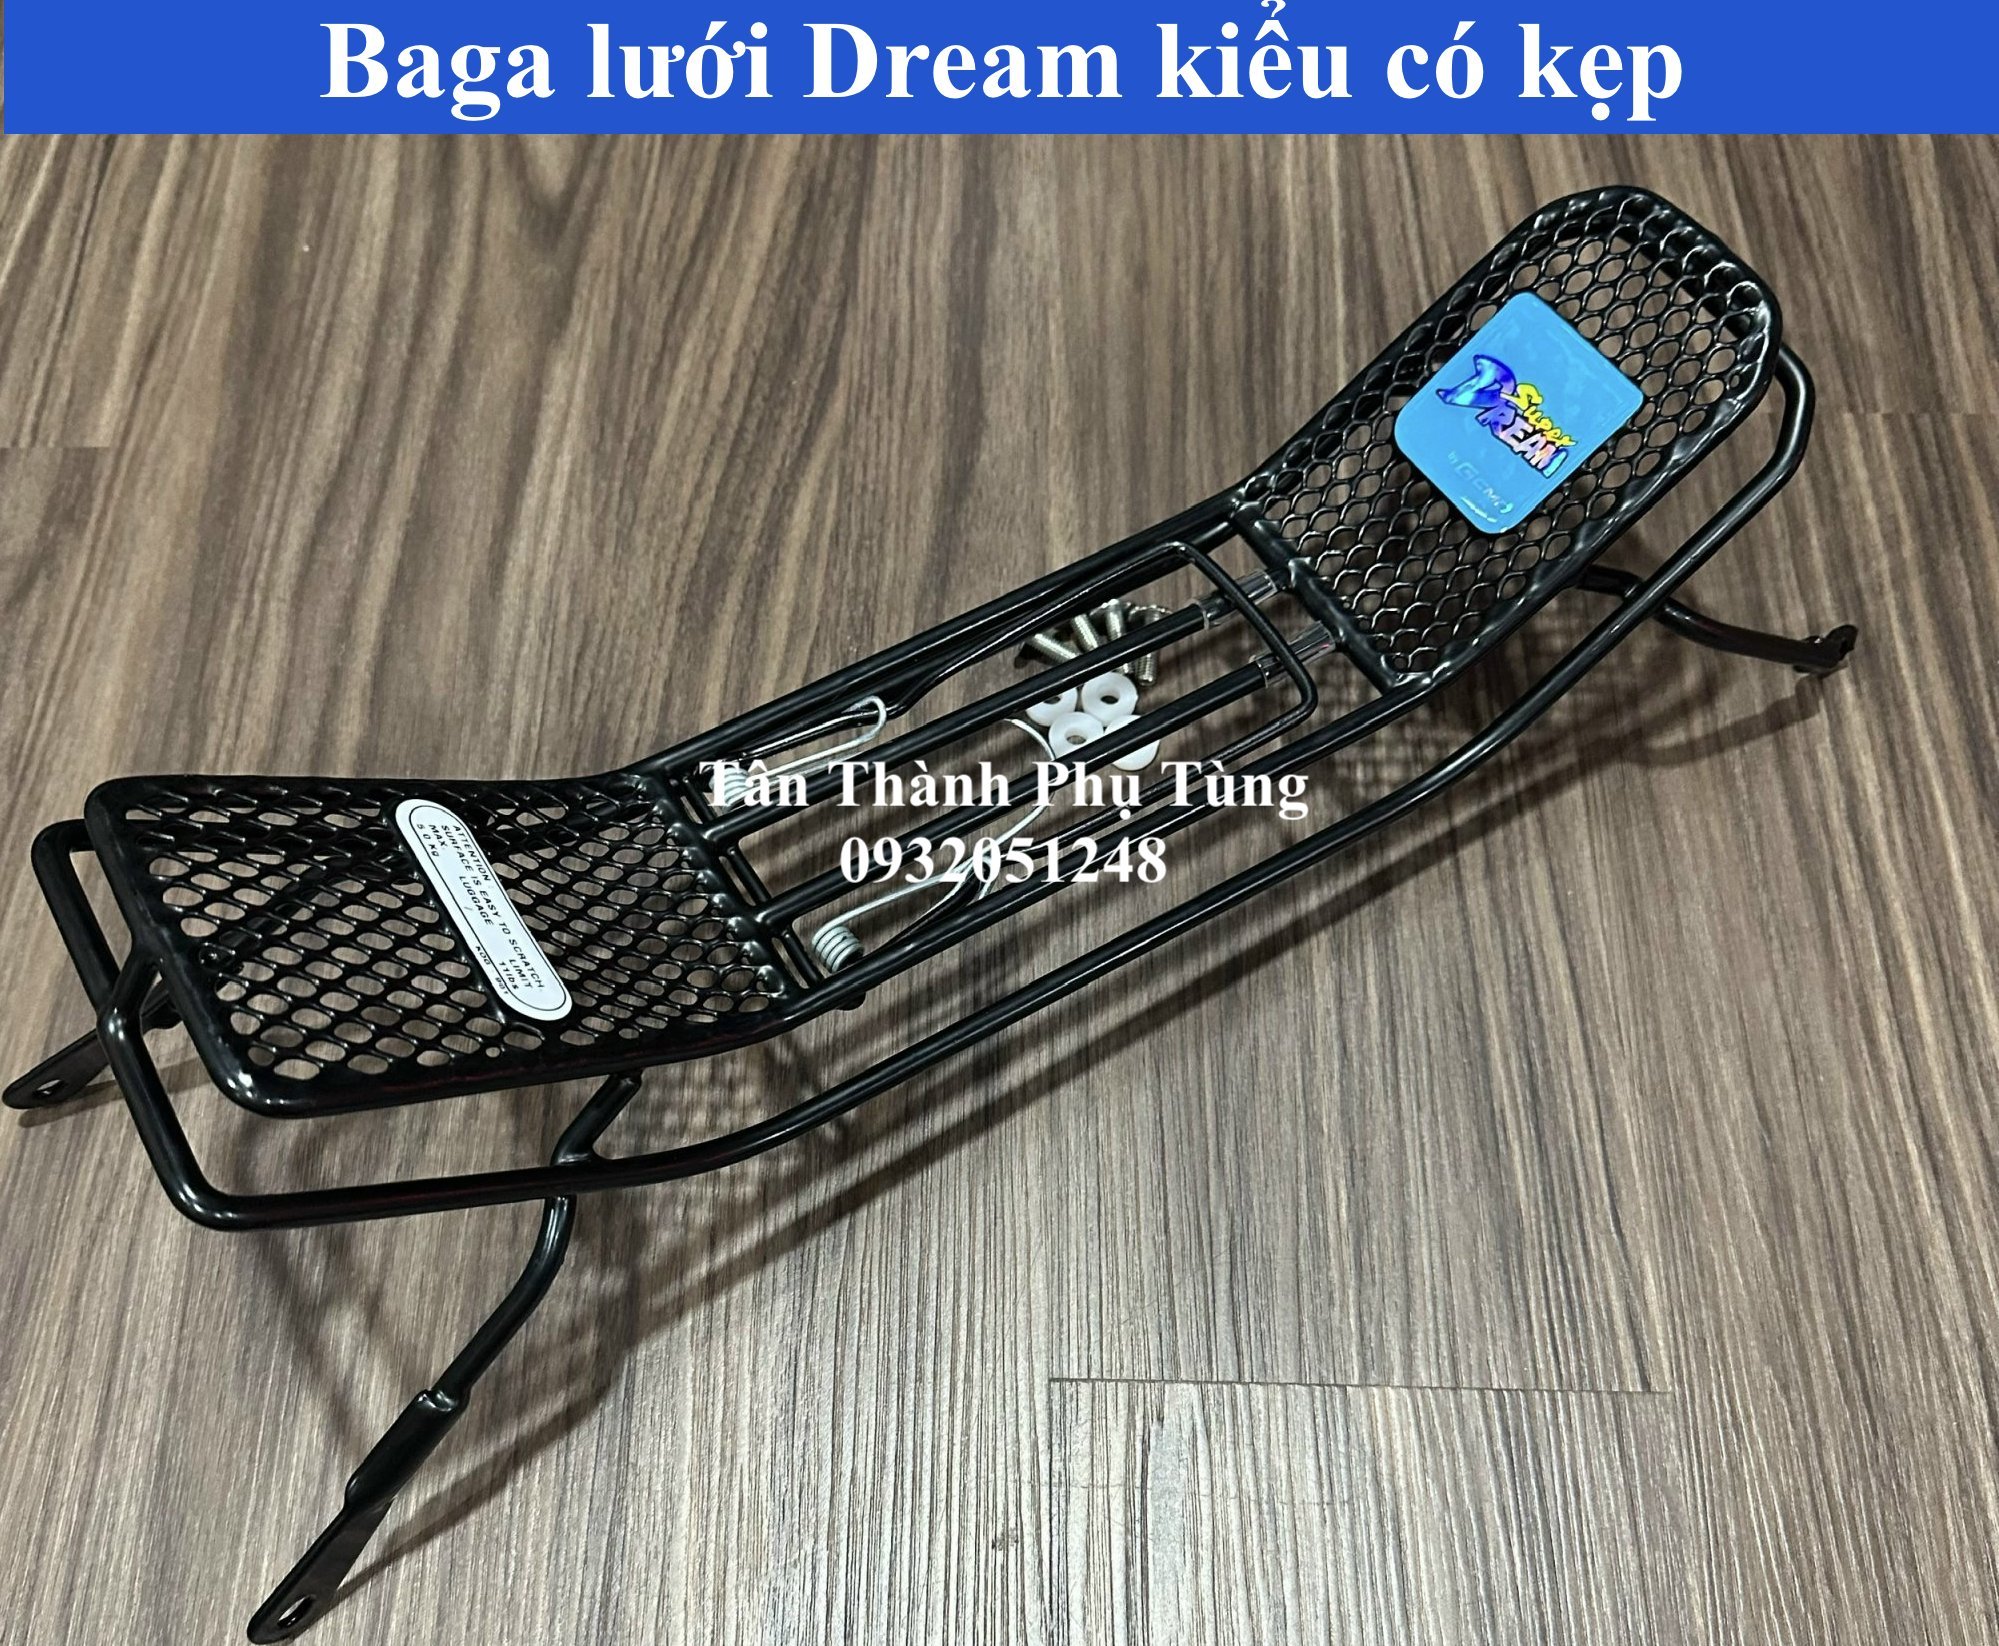 Baga lưới dành cho Dream Thái kiểu có kẹp kèm ốc